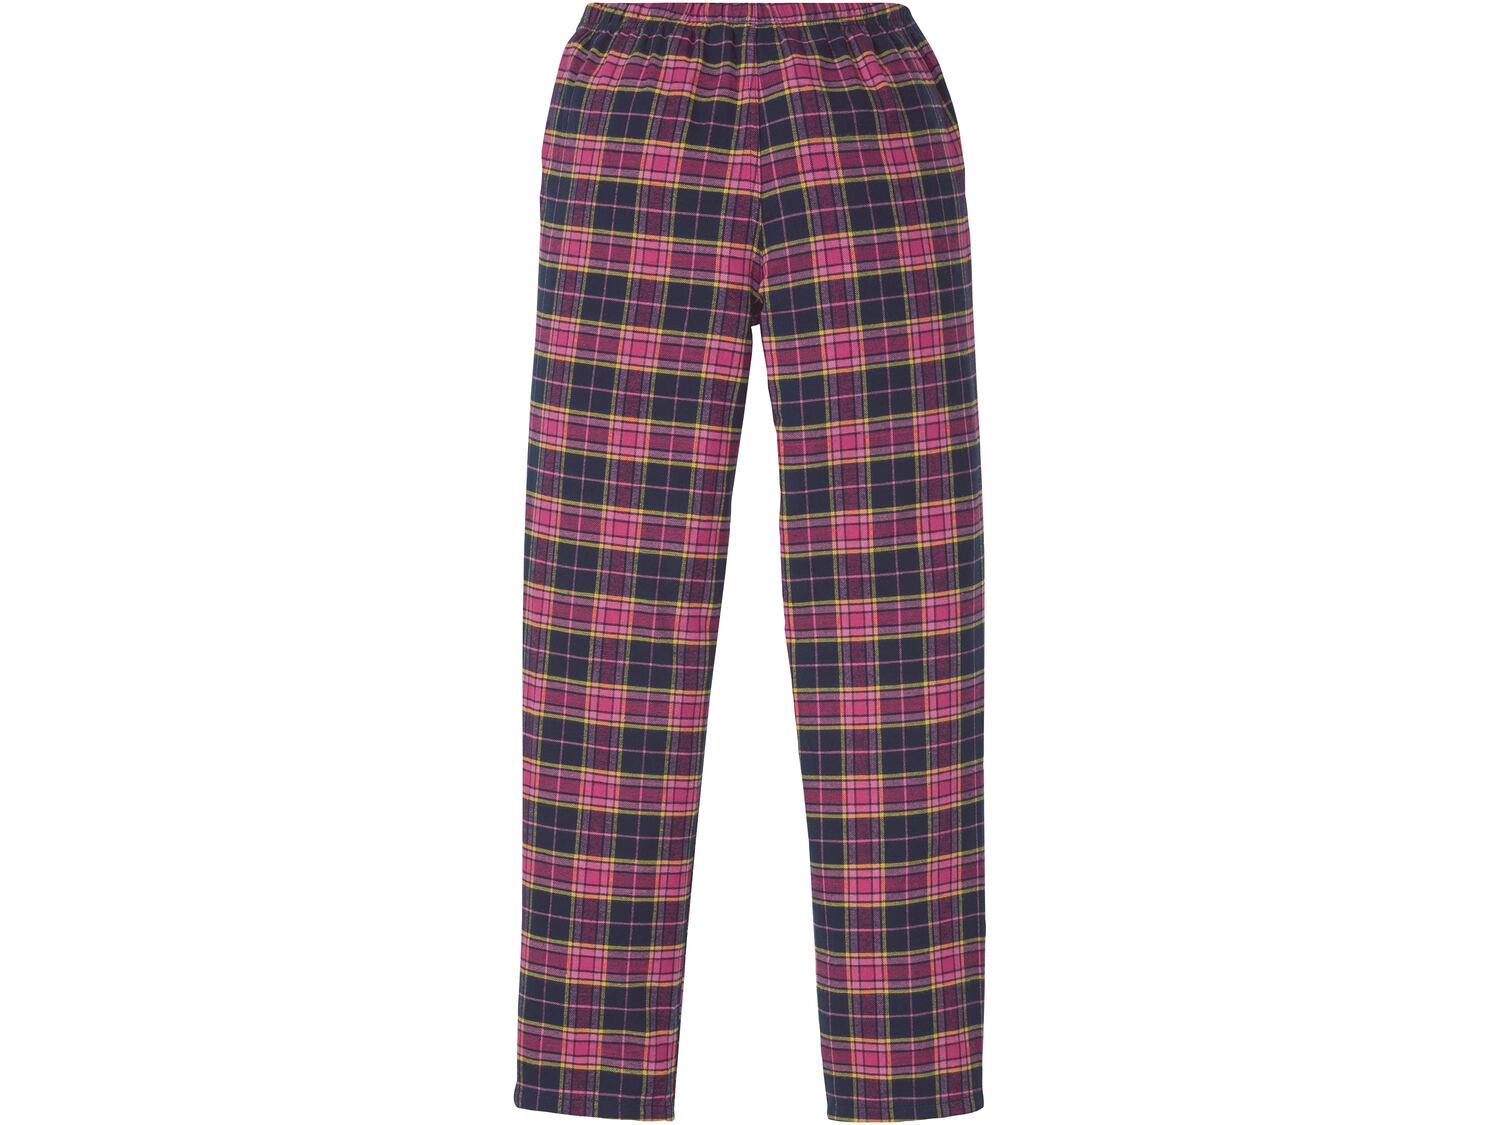 Spodnie flanelowe do spania damskie Esmara, cena 24,99 PLN 
- rozmiary: XS-L
- 100% ...